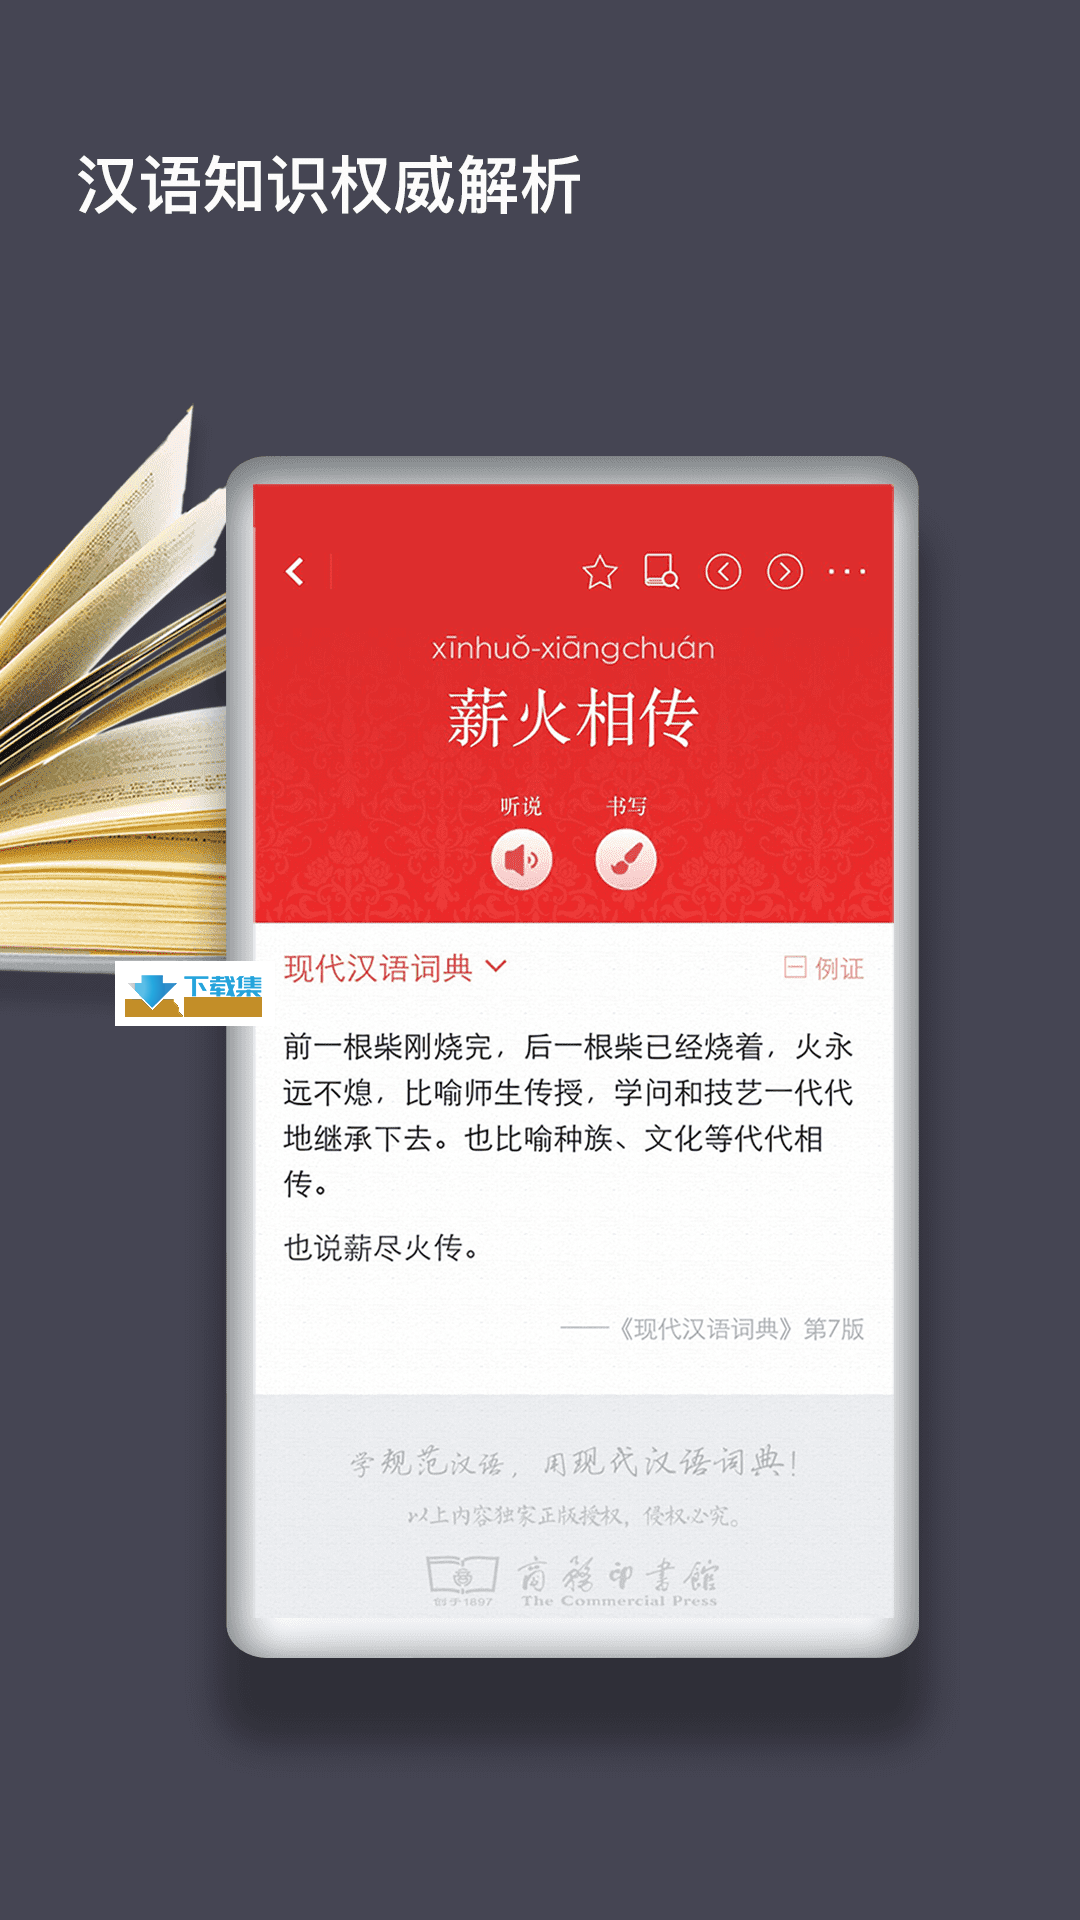 现代汉语词典界面2